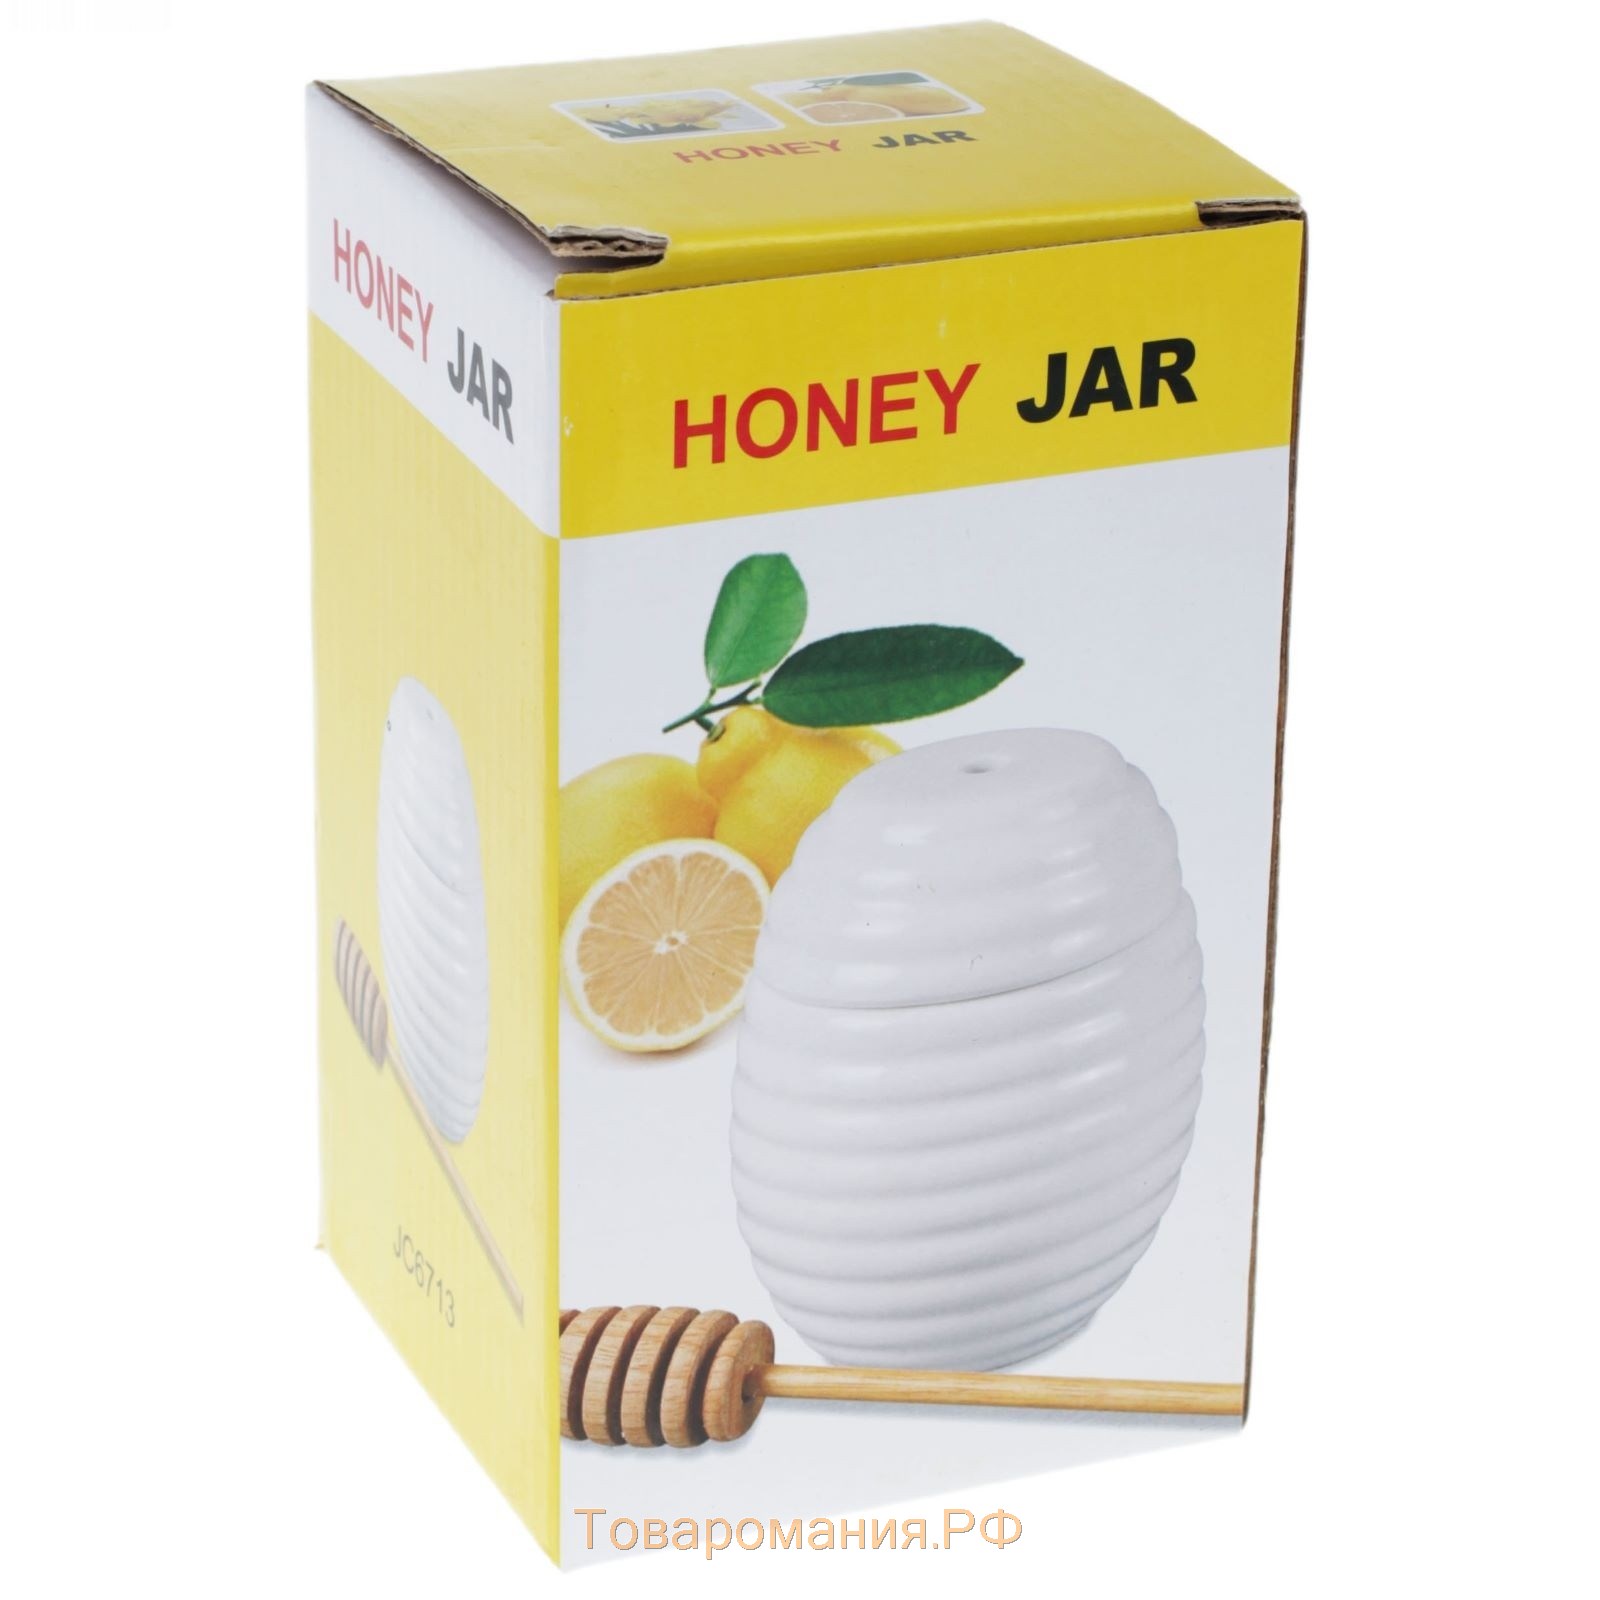 Ёмкость фарфоровая для мёда с ложкой BellaTenero, 300 мл, цвет белый